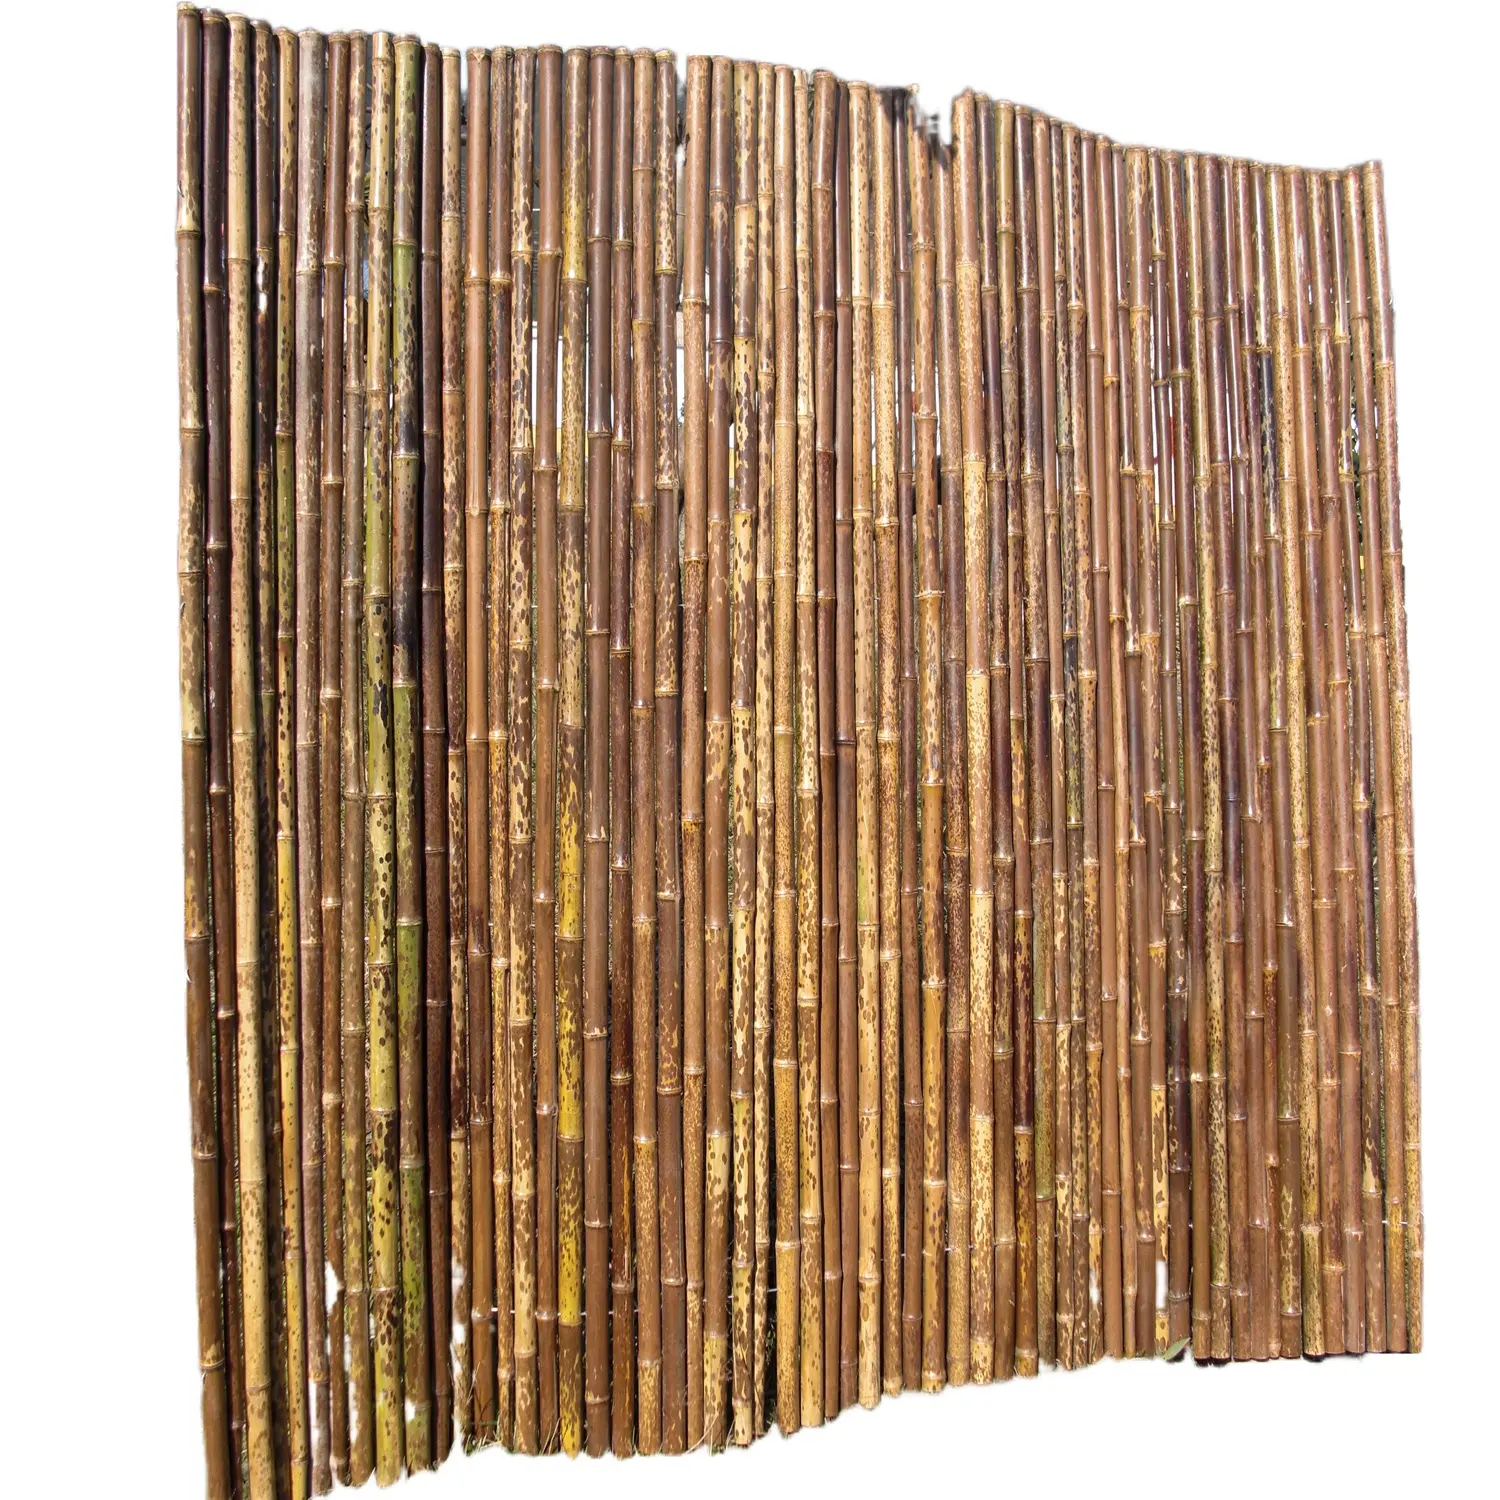 Gulungan pagar bintik!! Spesial!!! Panel pagar taman bambu harimau ZY-2009 3 kaki tipe kayu dengan tekanan olahan panas